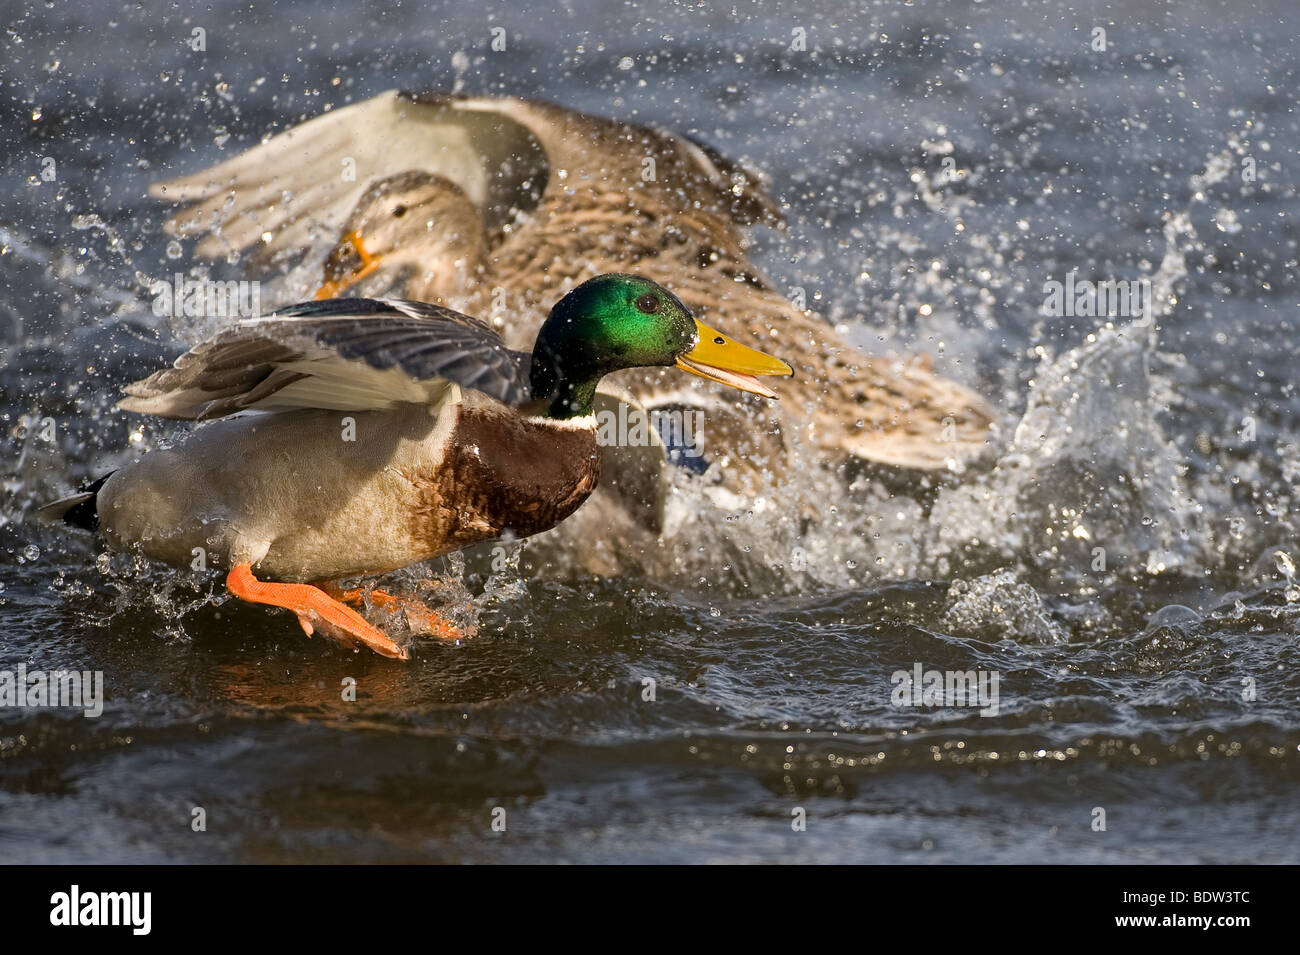 Courtship among ducks Stock Photo